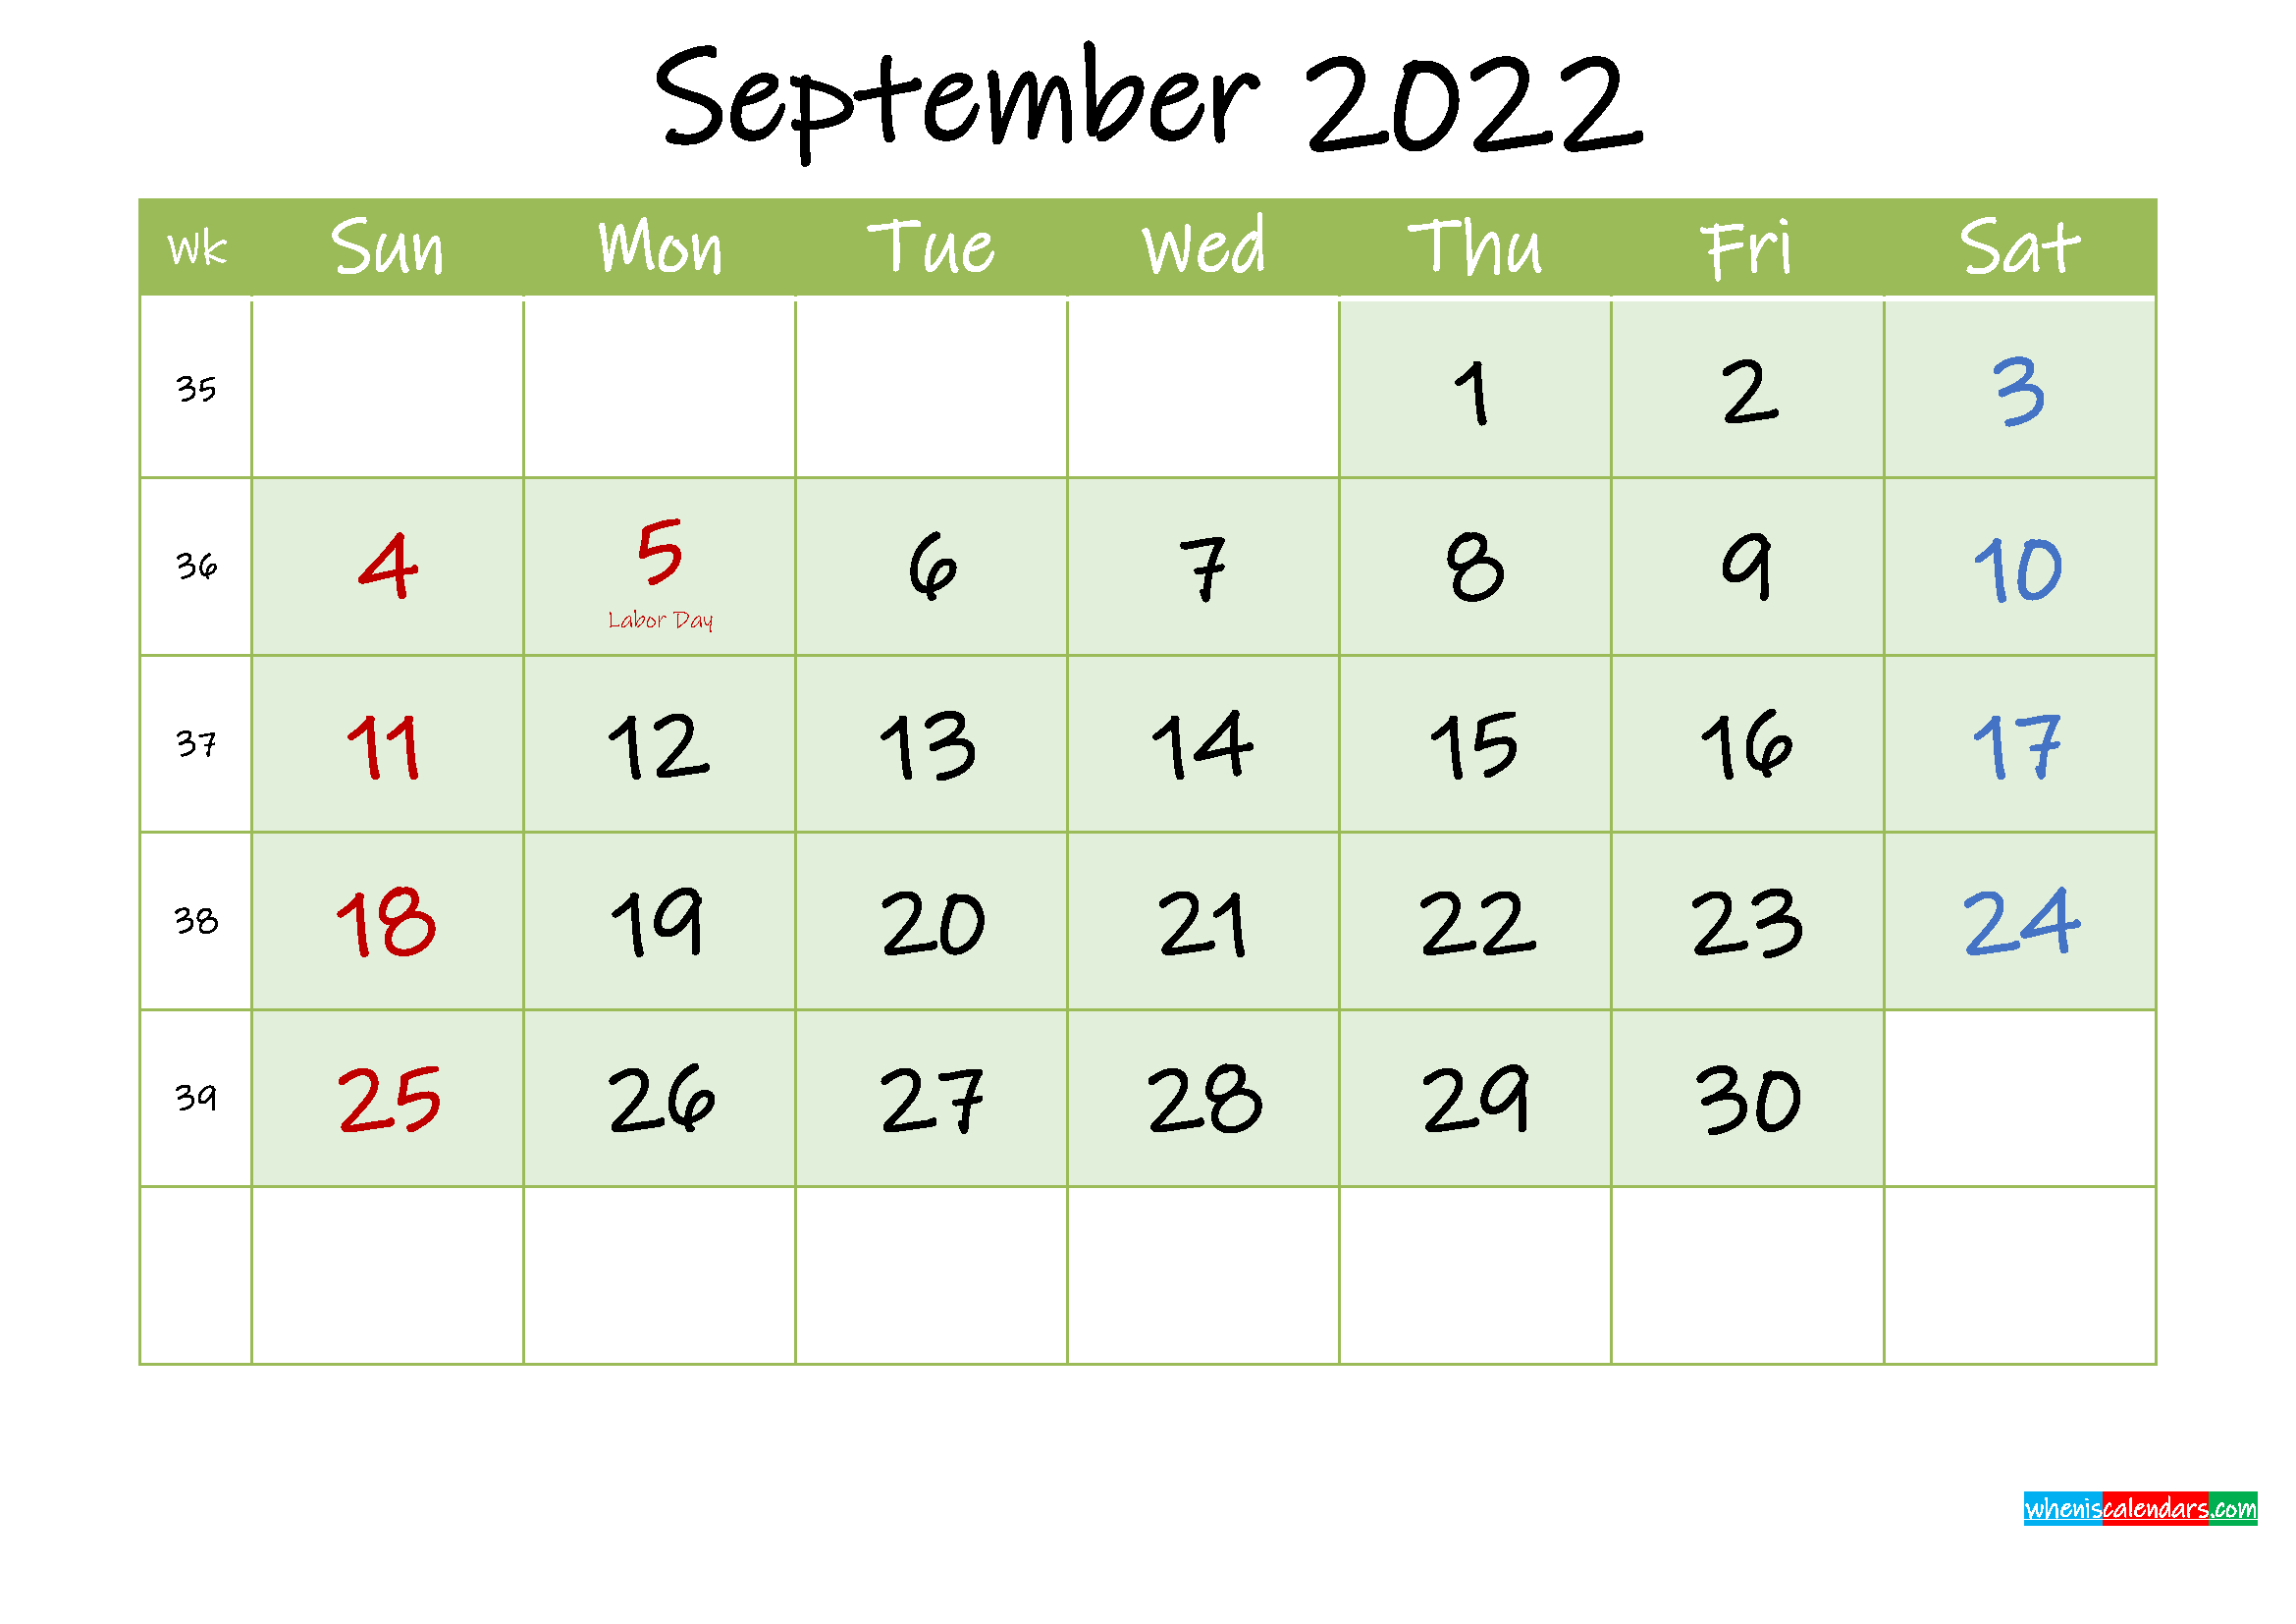 Get Calendar August And September 2022